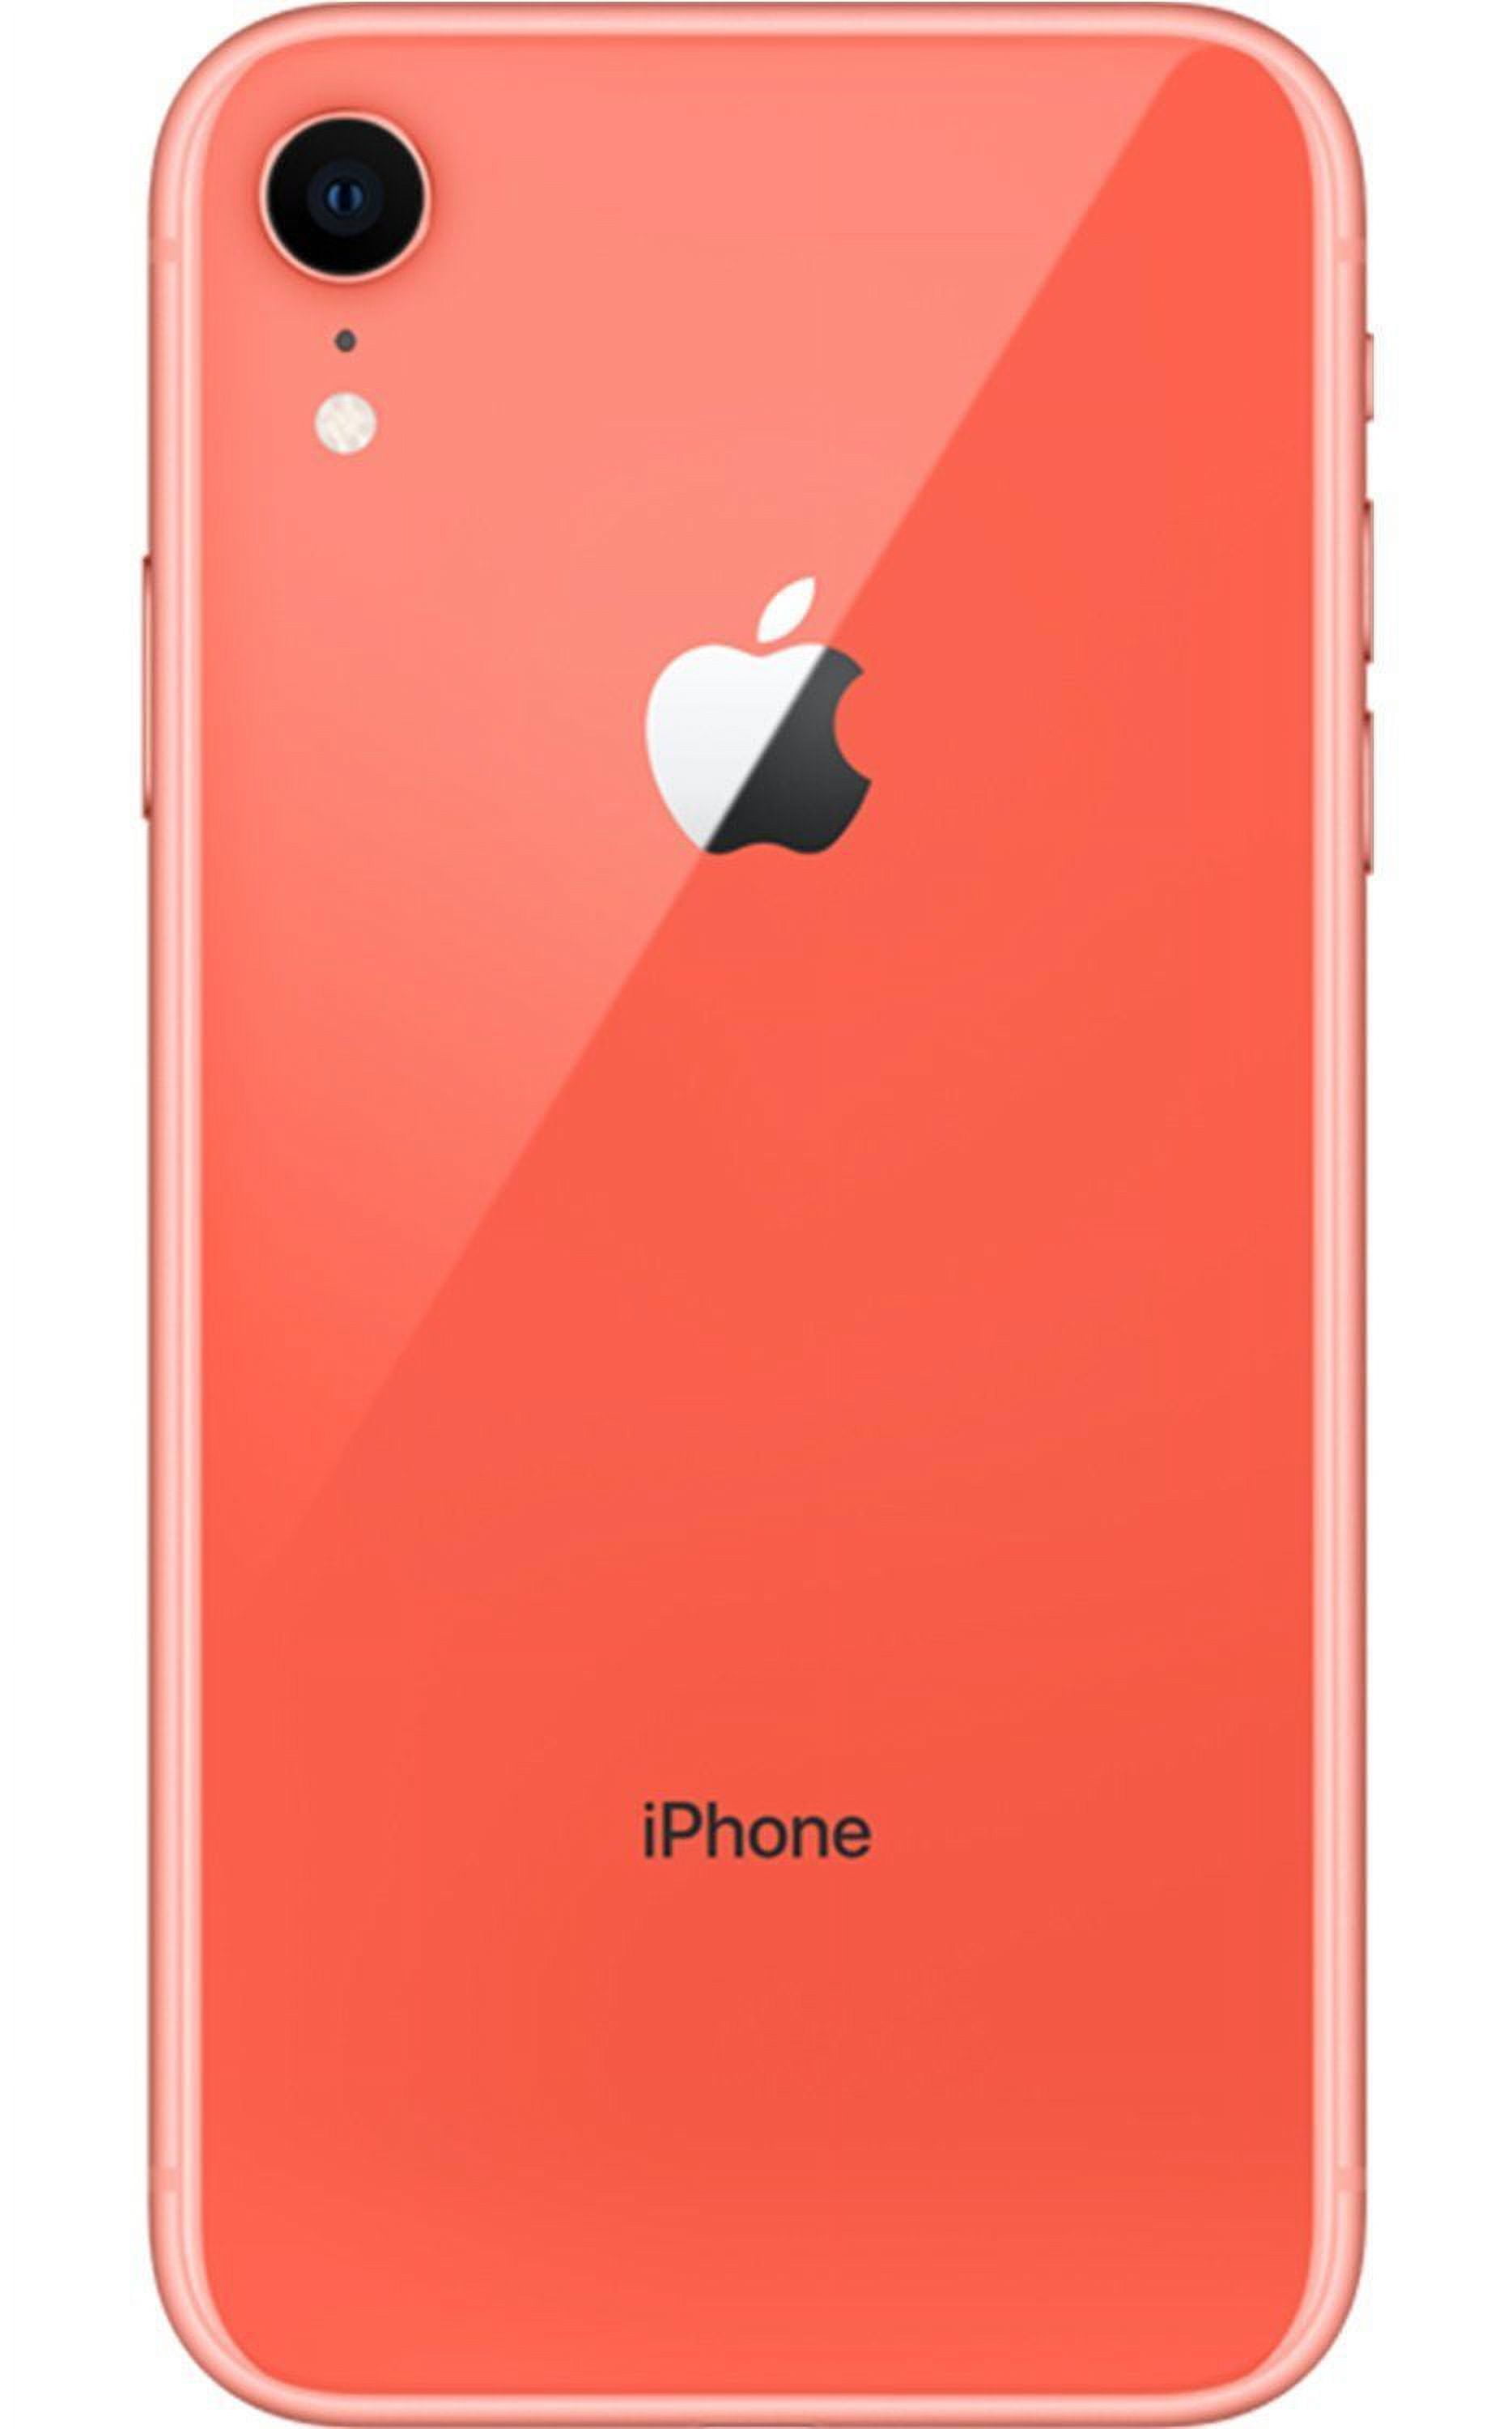 Celular Apple iPhone Xr Reacondicionado 64gb color Blanco más Audífonos  Genéricos